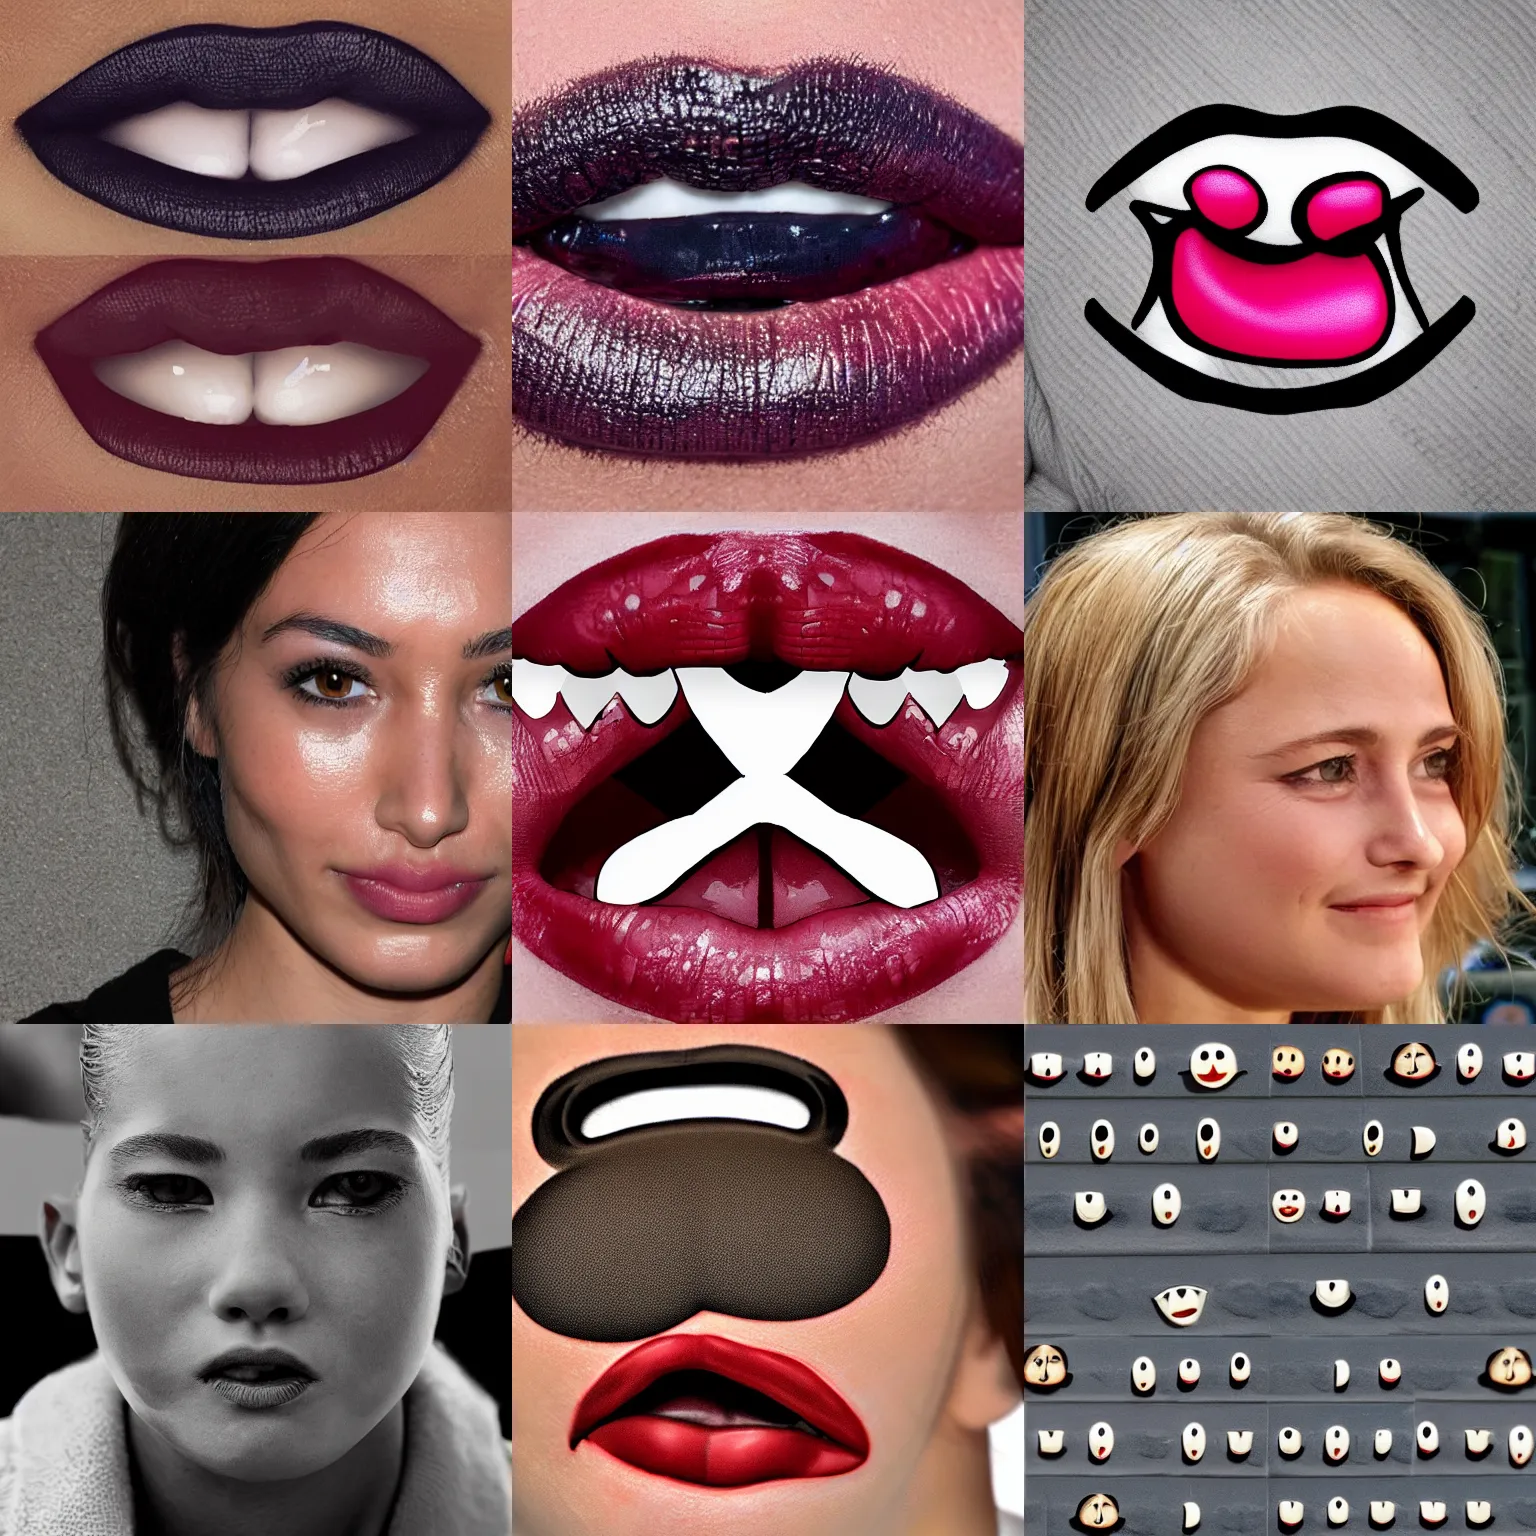 Prompt: lip bite emoji